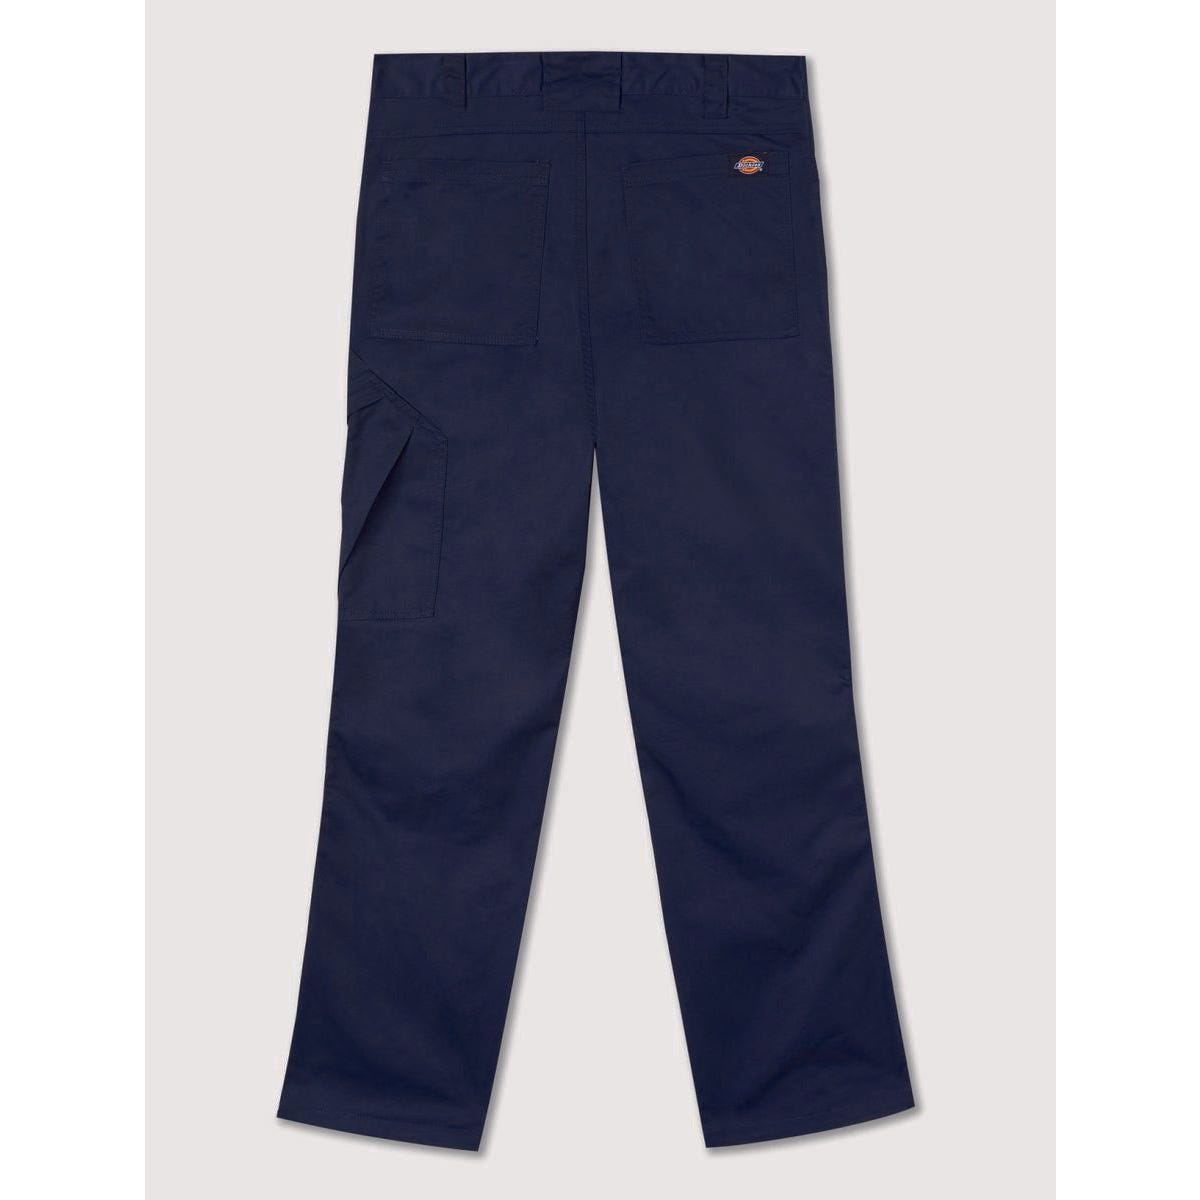 Pantalon de travail Action Flex gris - Dickies - Taille 40 6